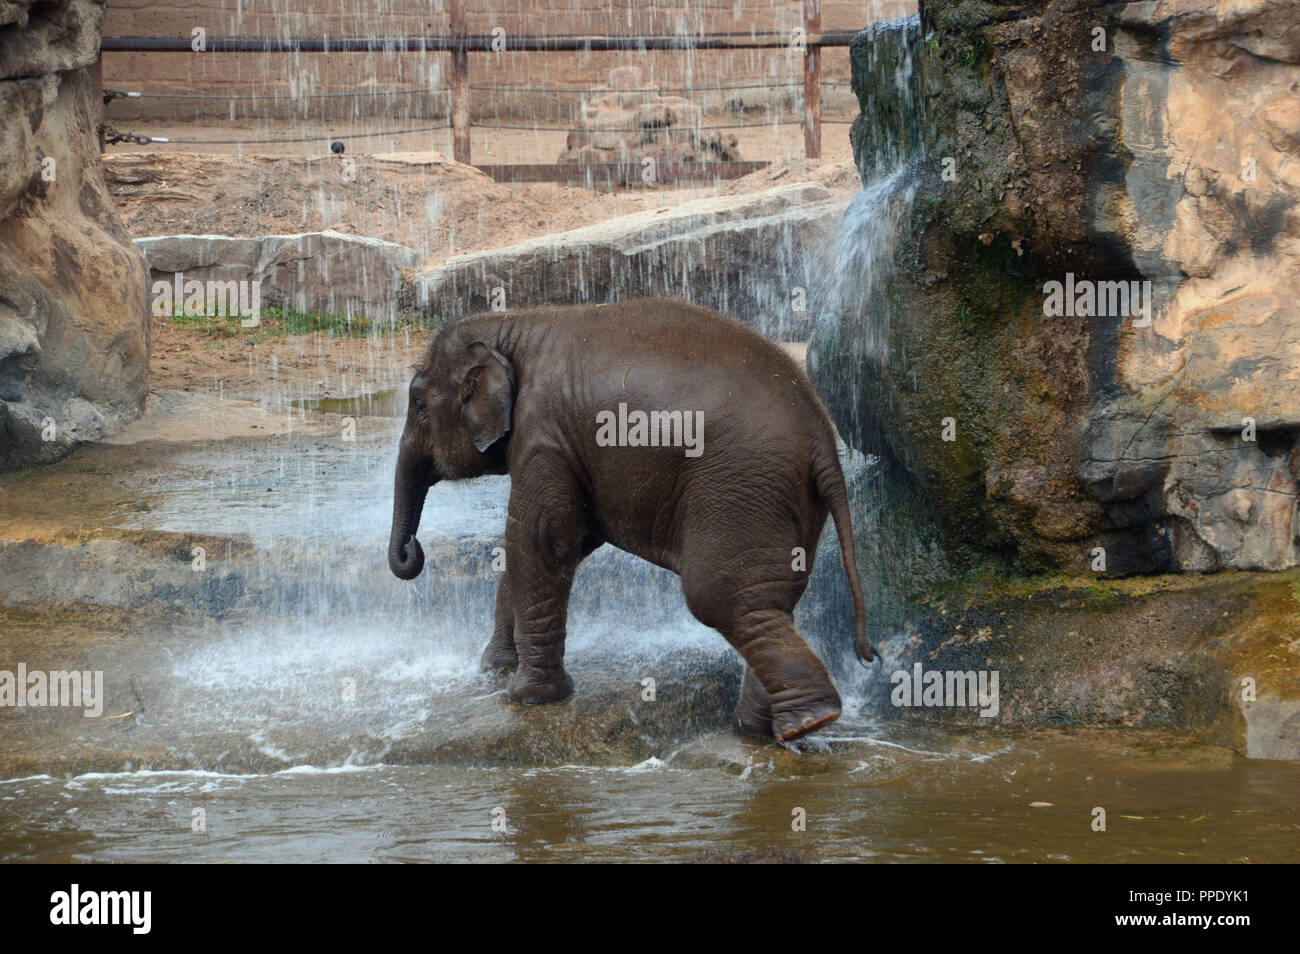 Un jeune éléphant d'Asie (Elephas maximus) de prendre une douche sous une cascade dans son enclos au Zoo de Chester. Banque D'Images